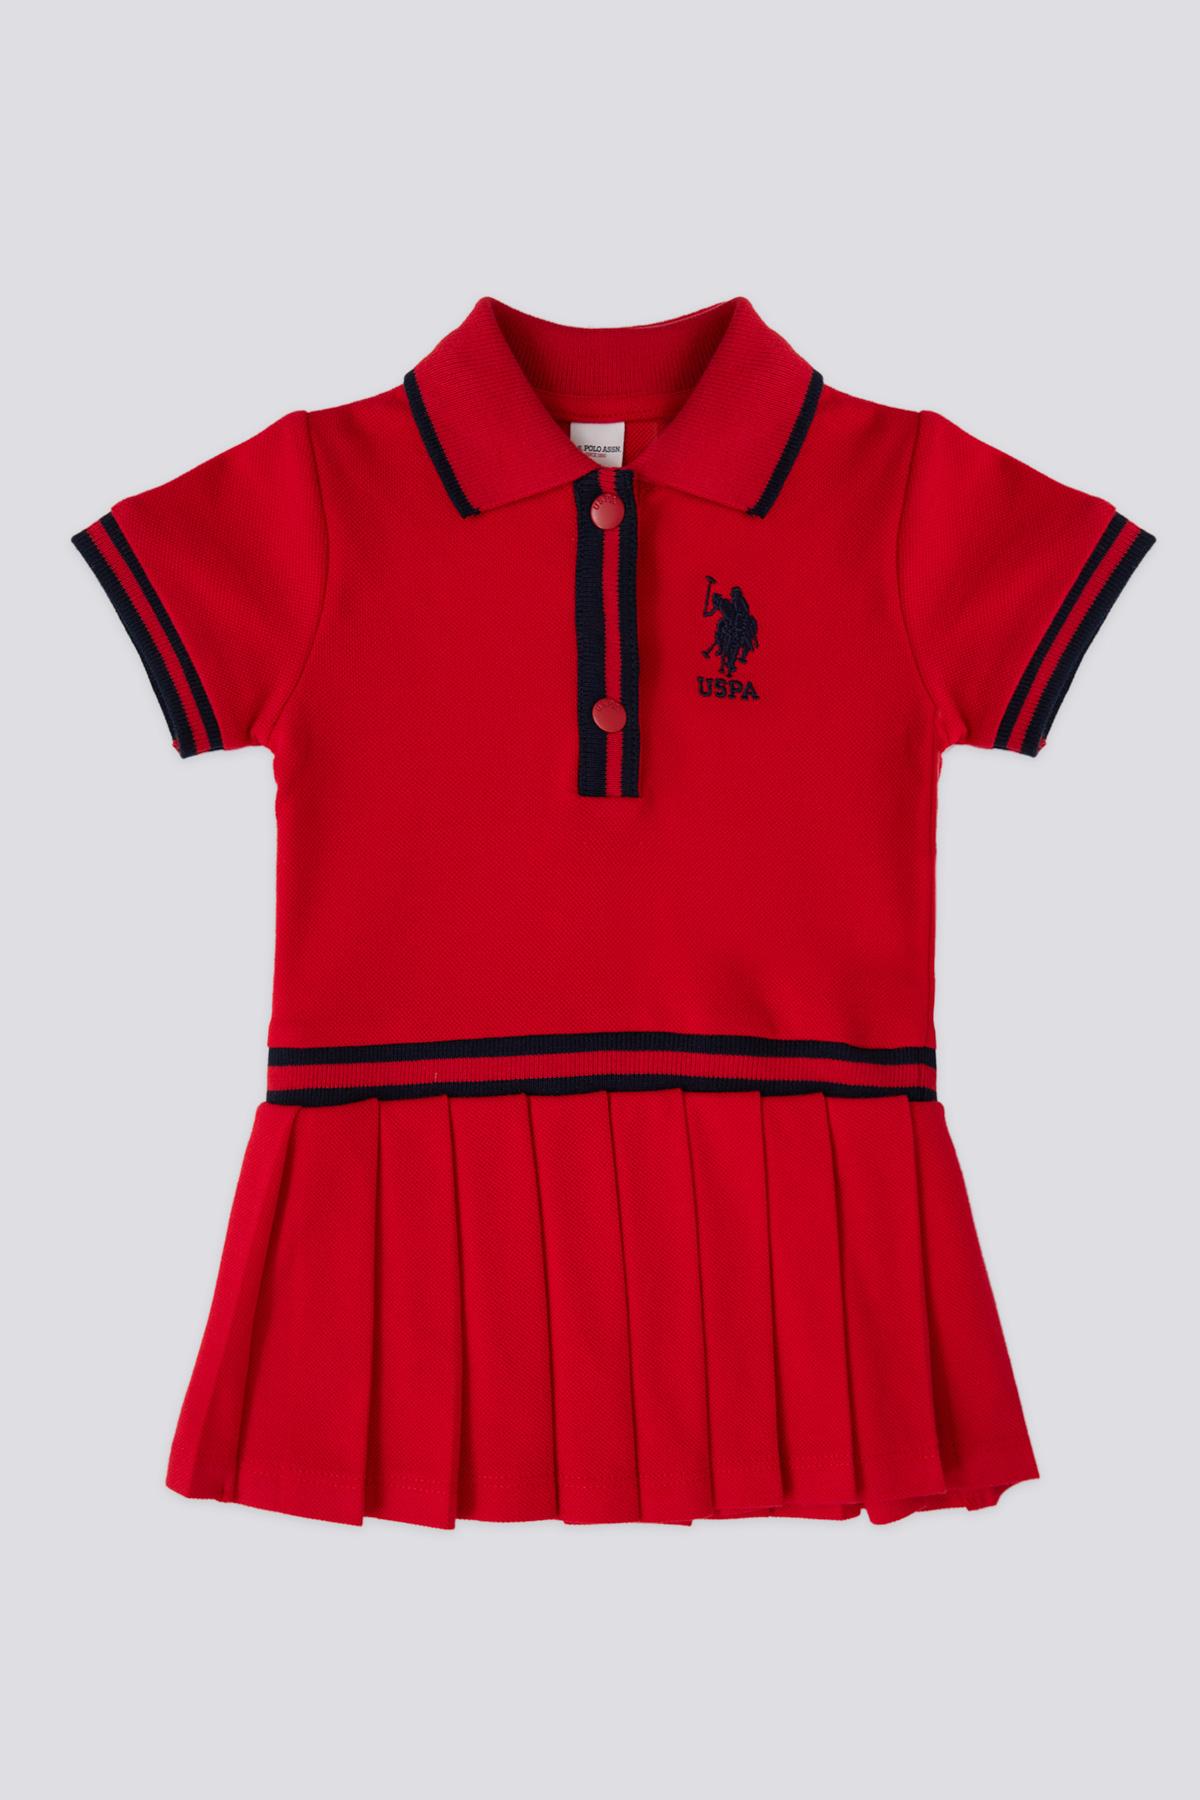 U.S. Polo Assn. Haljina za bebe USB1963, Crvena